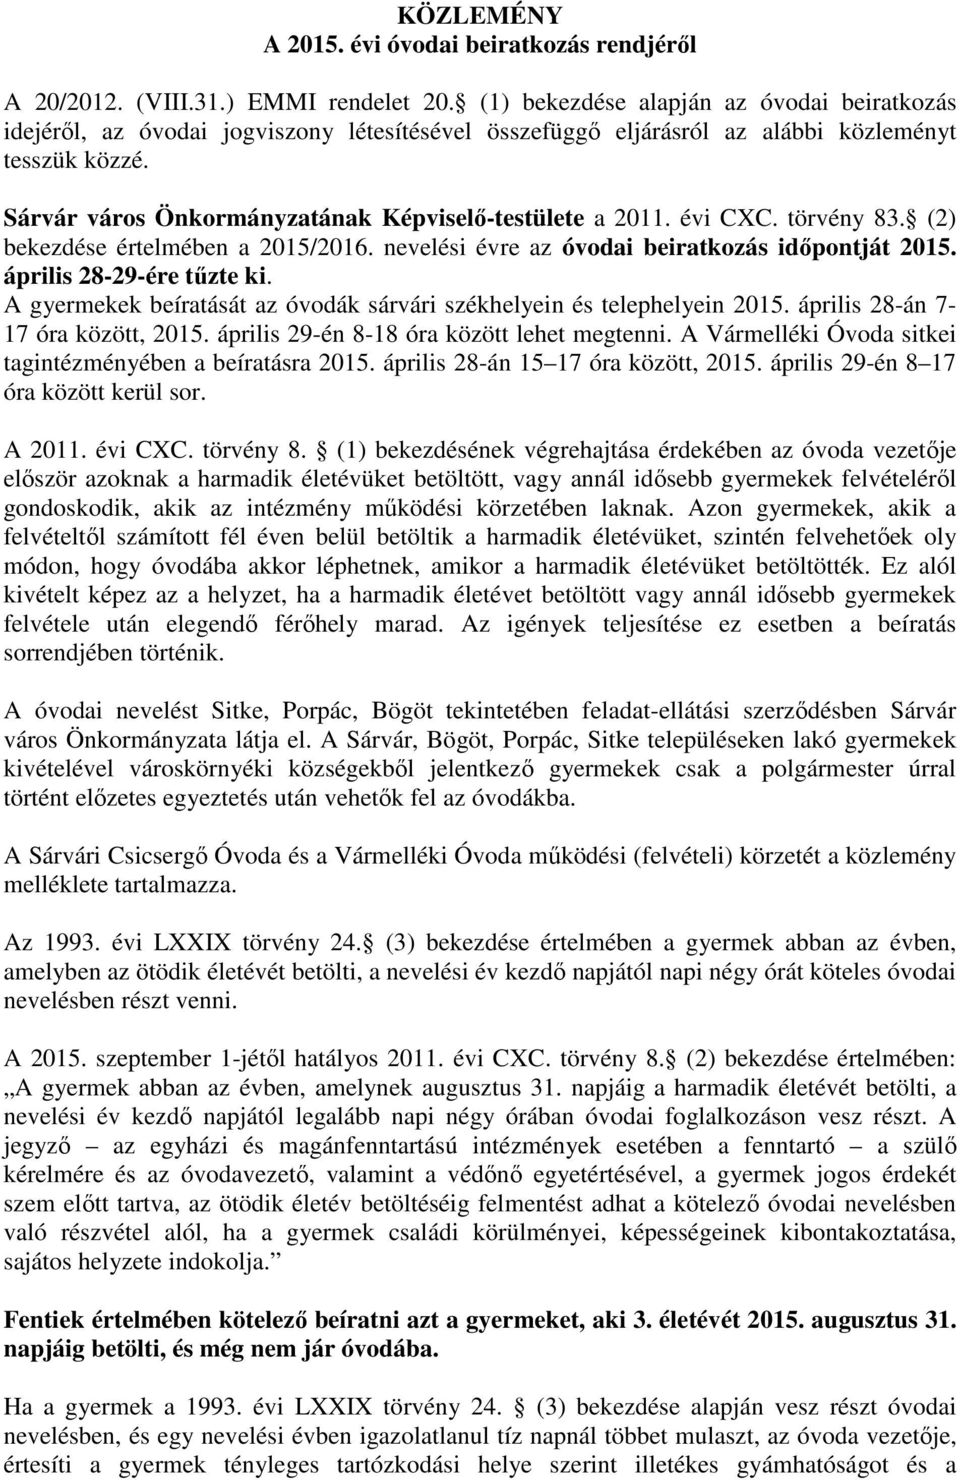 Sárvár város Önkormányzatának Képviselő-testülete a 2011. évi CXC. törvény 83. (2) bekezdése értelmében a 2015/2016. nevelési évre az óvodai beiratkozás időpontját 2015. április 28-29-ére tűzte ki.